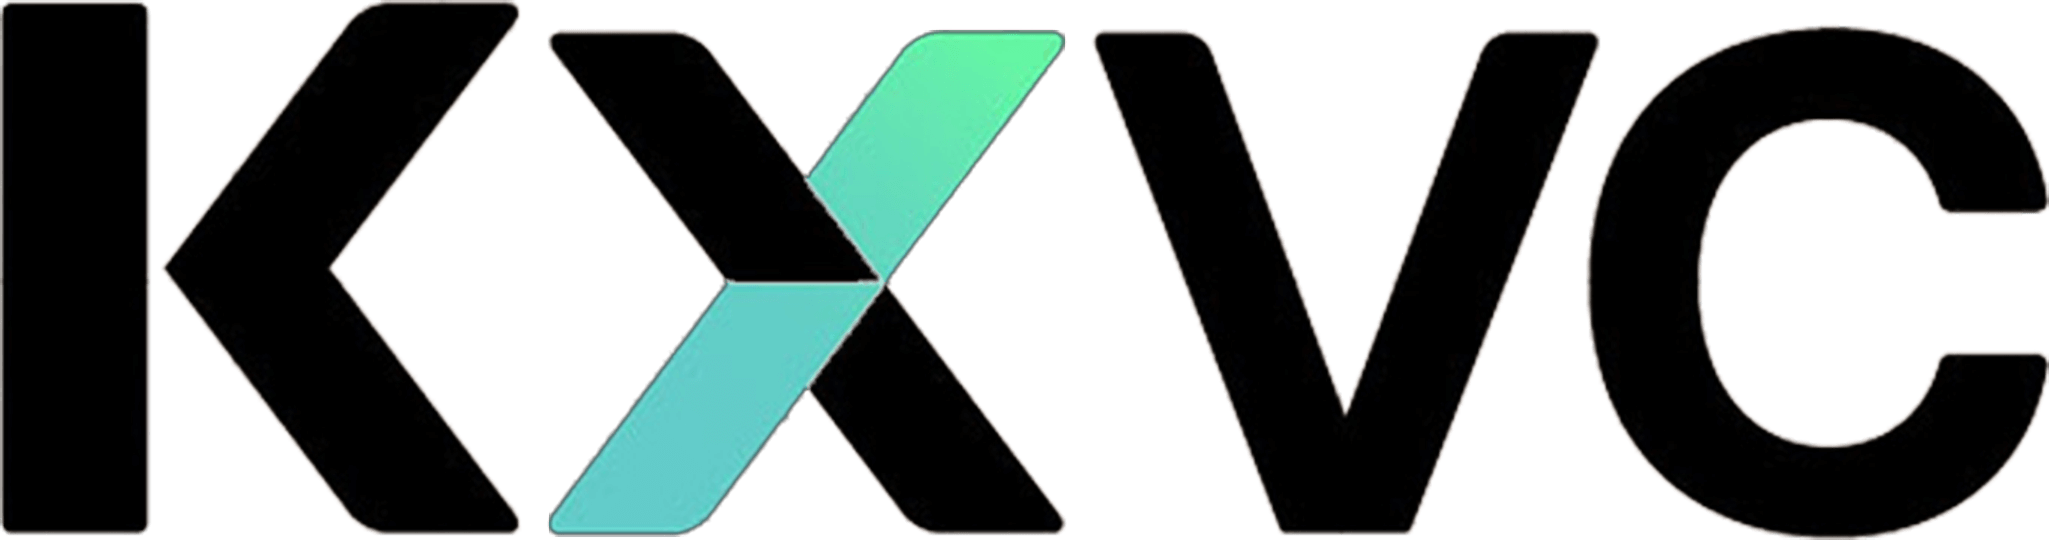 KX Ventures | Lead investor